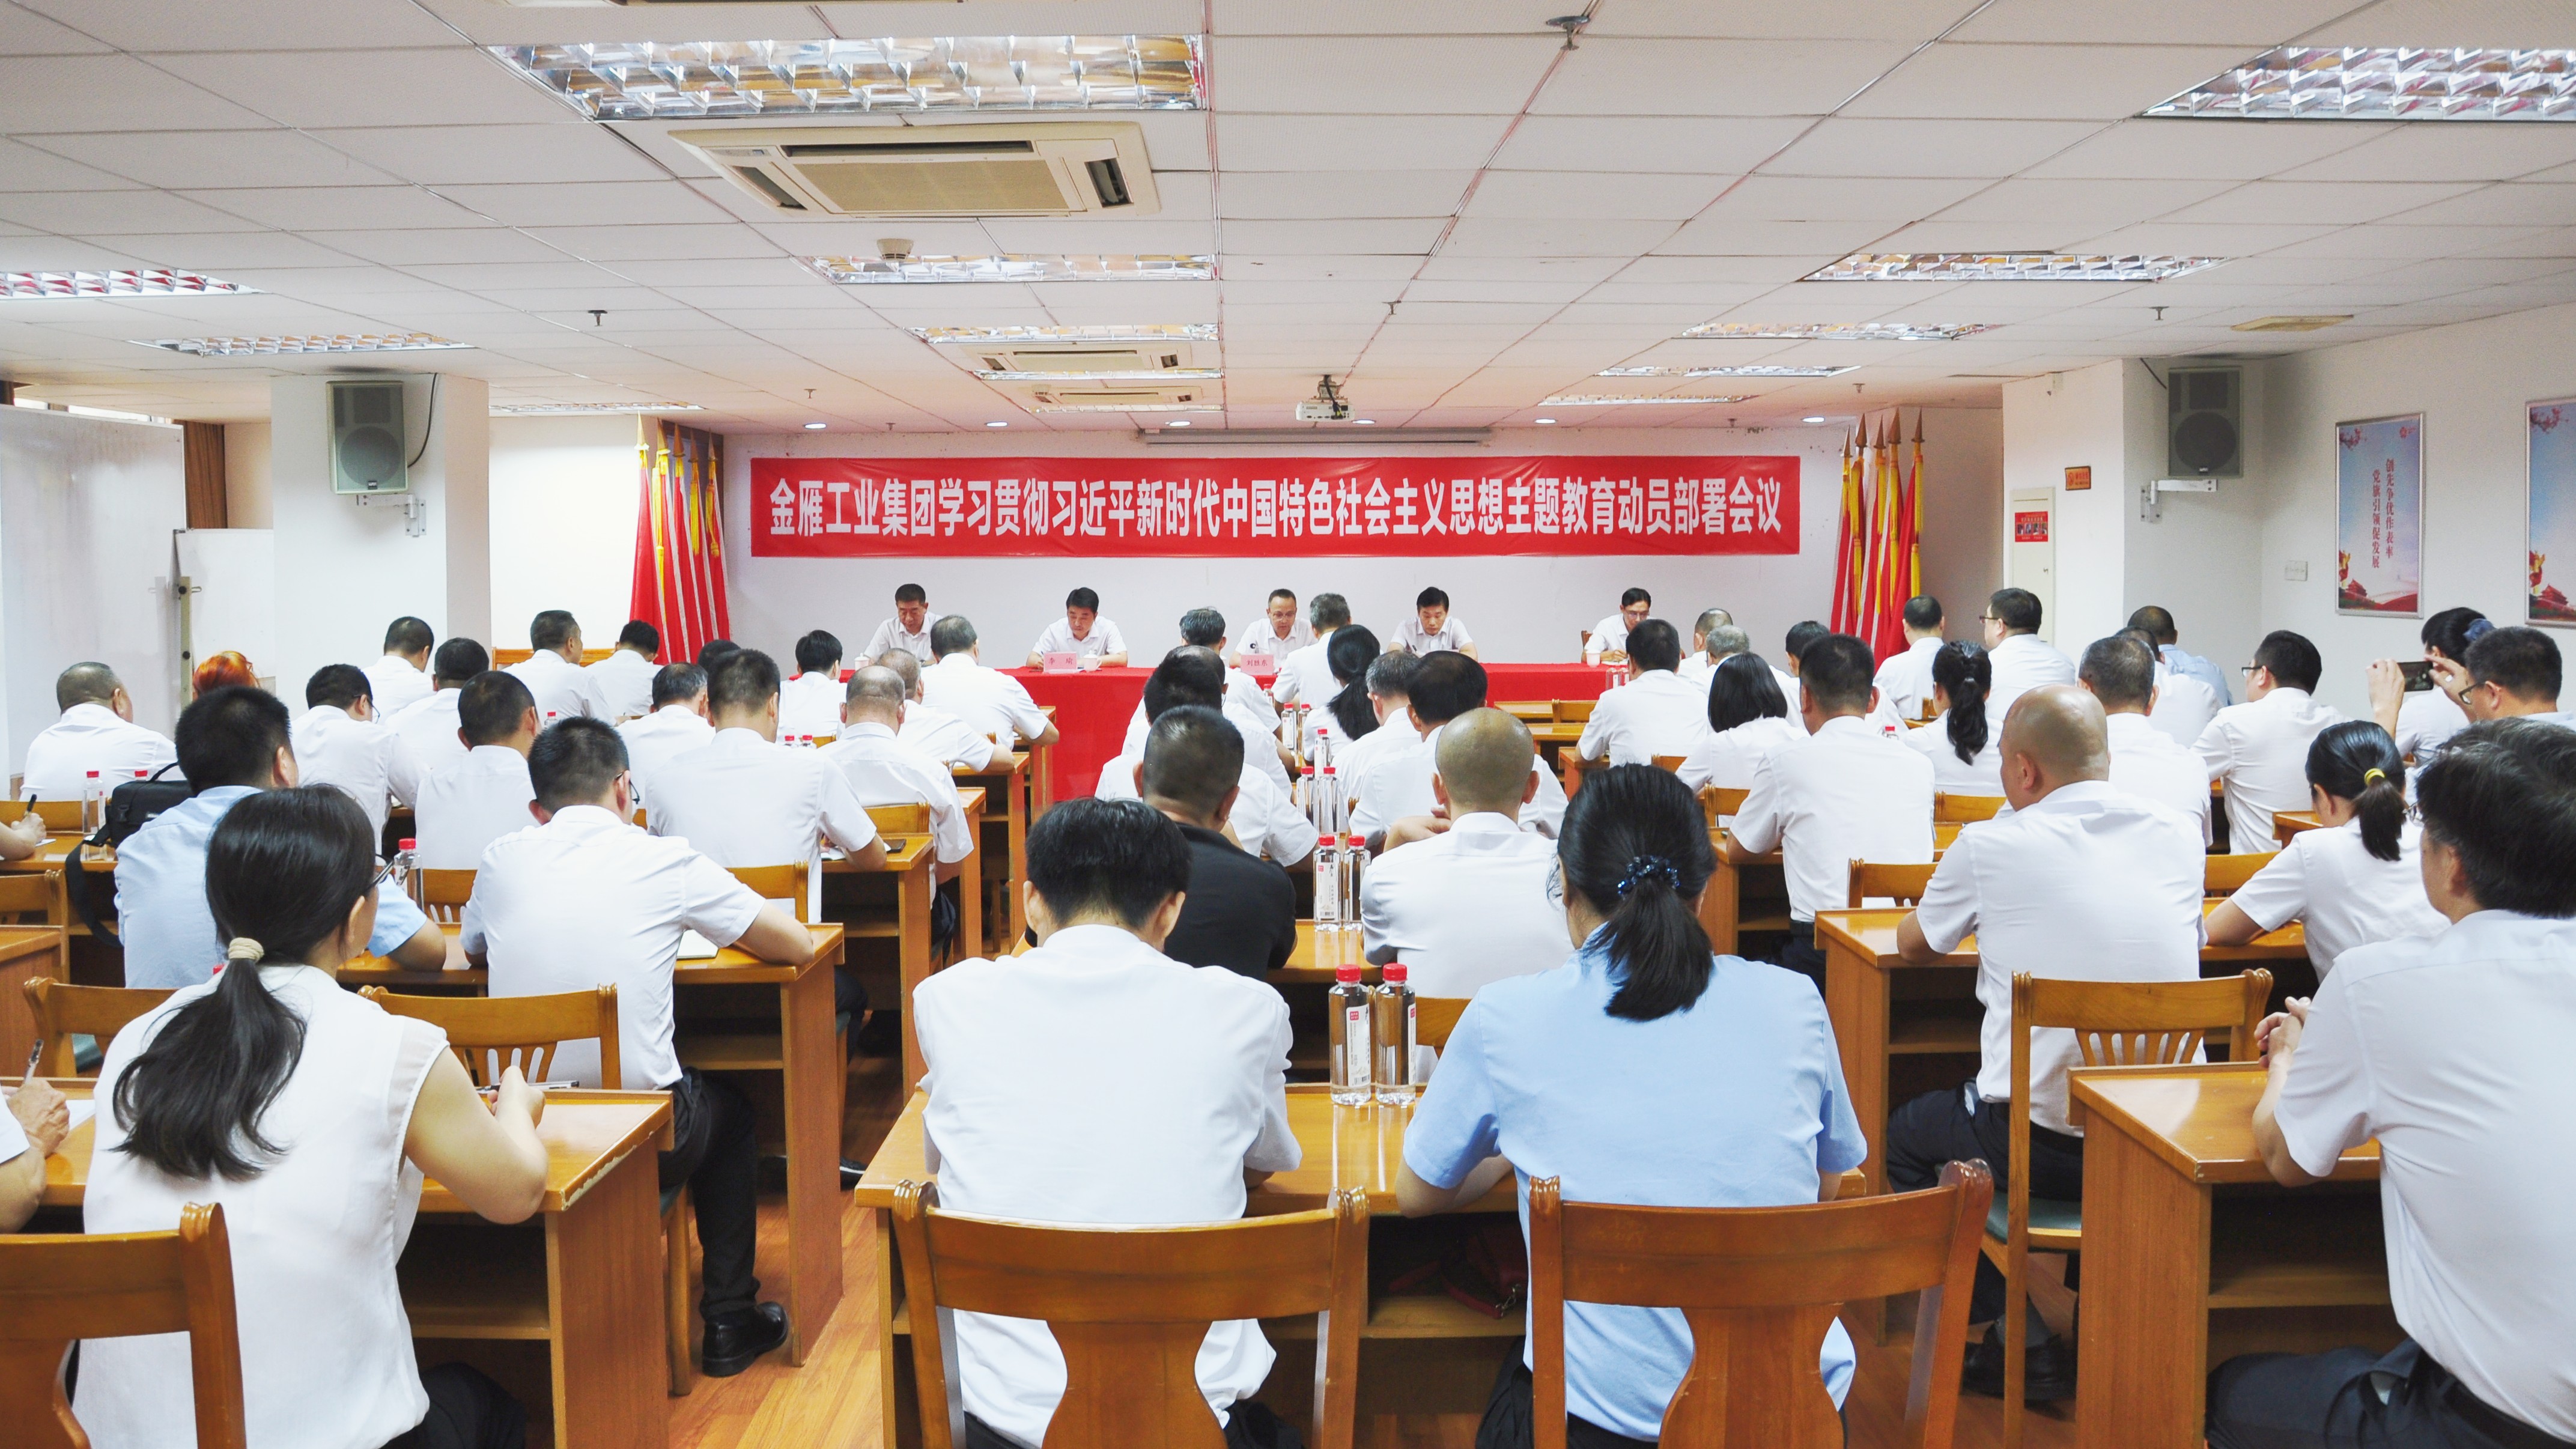 金雁工业集团召开学习贯彻习近平新时代中国特色社会主义思想主题教育动员部署会议